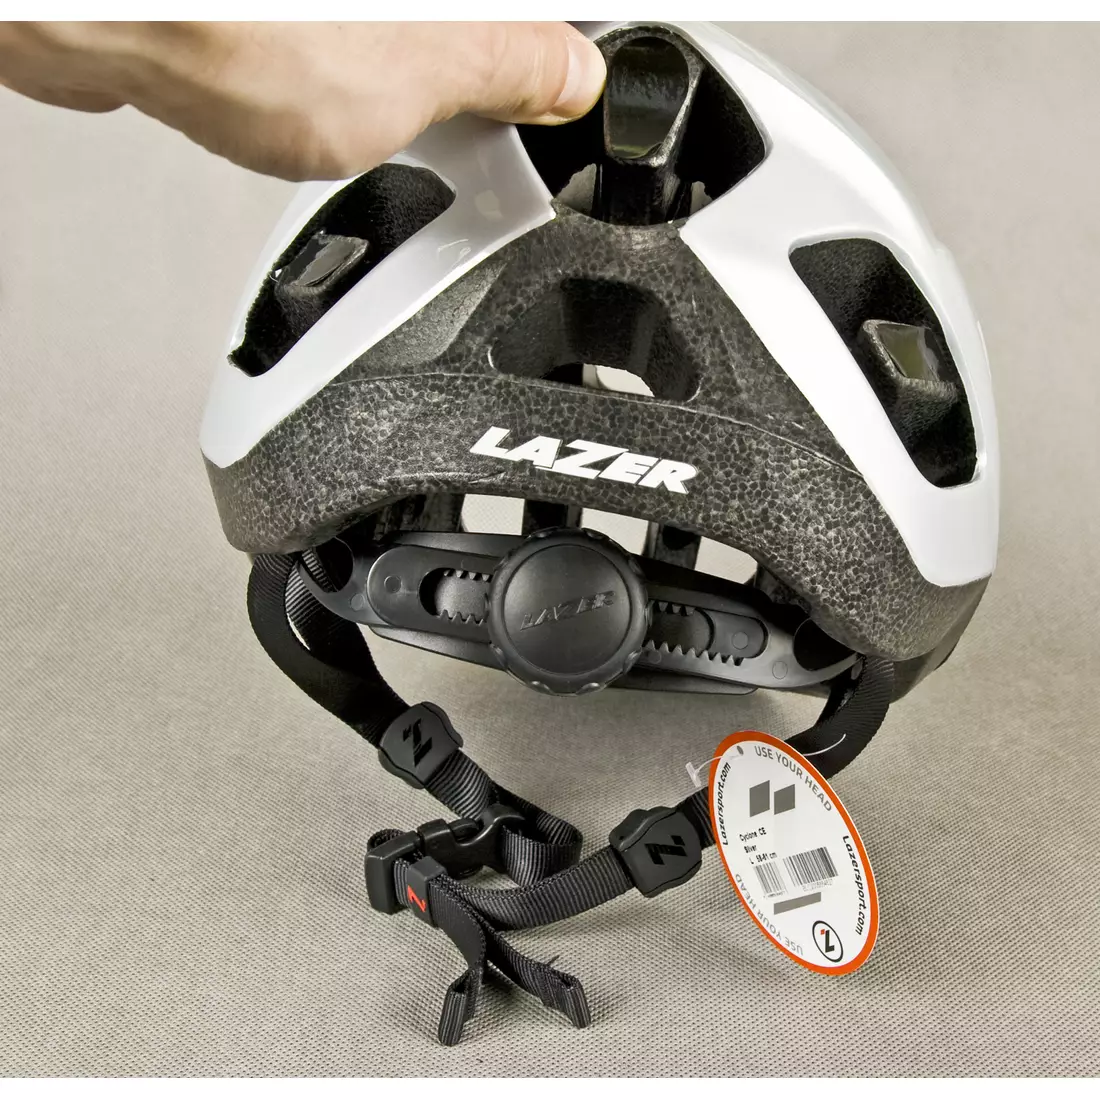 MTB cyklistická helma LAZER - CYCLONE, barva: stříbrná